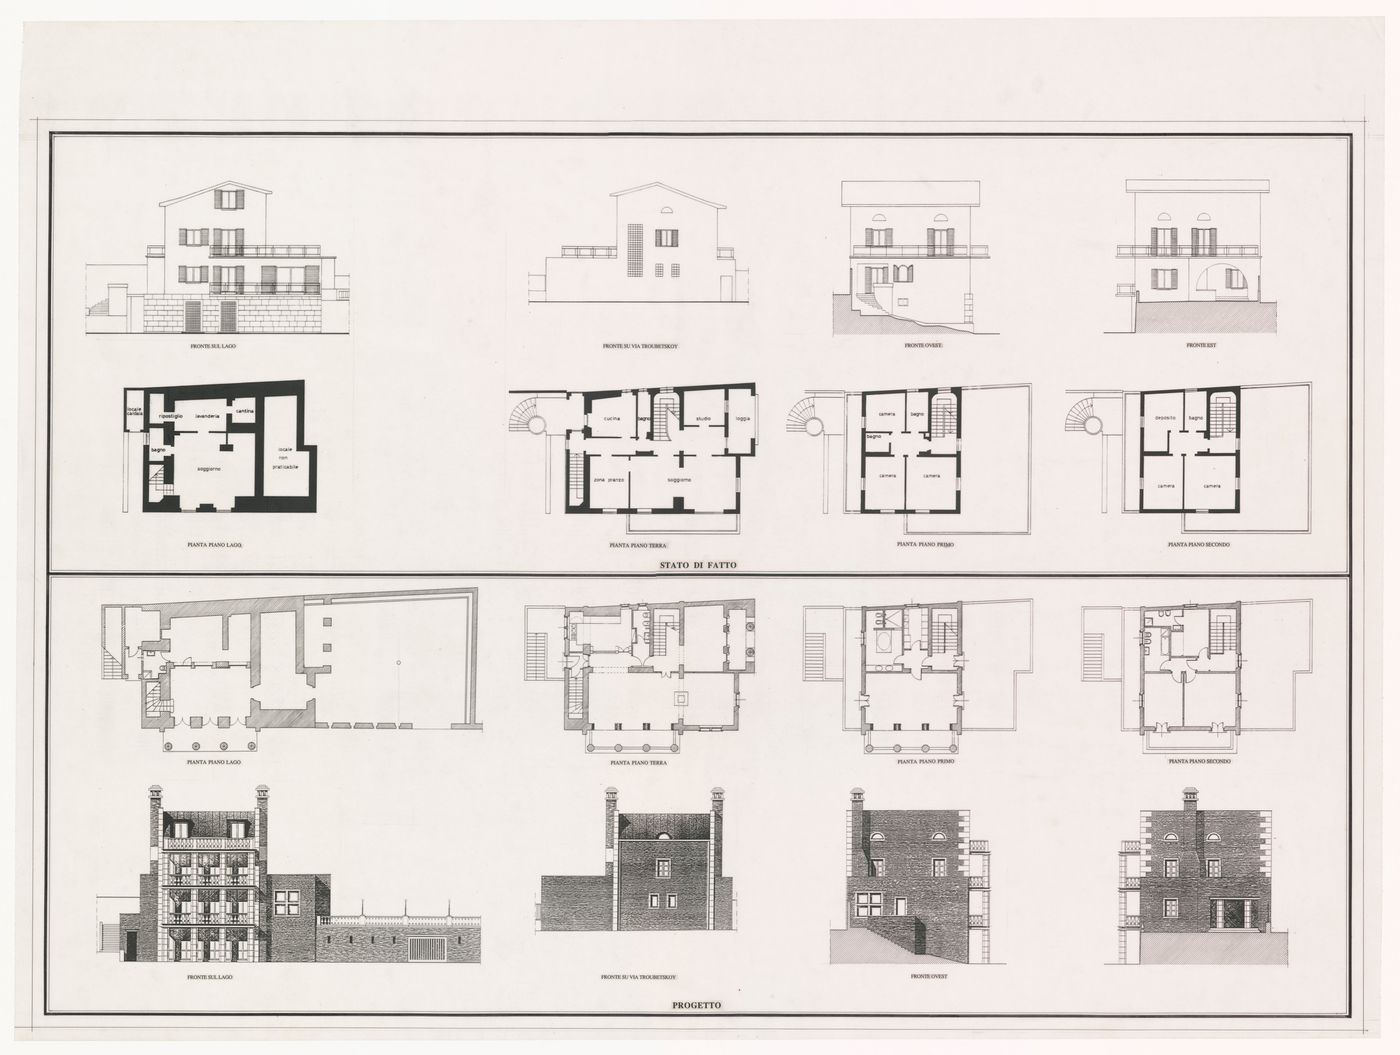 Plans and elevations for Ristrutturazione Casa Alessi, Verbania, Italy